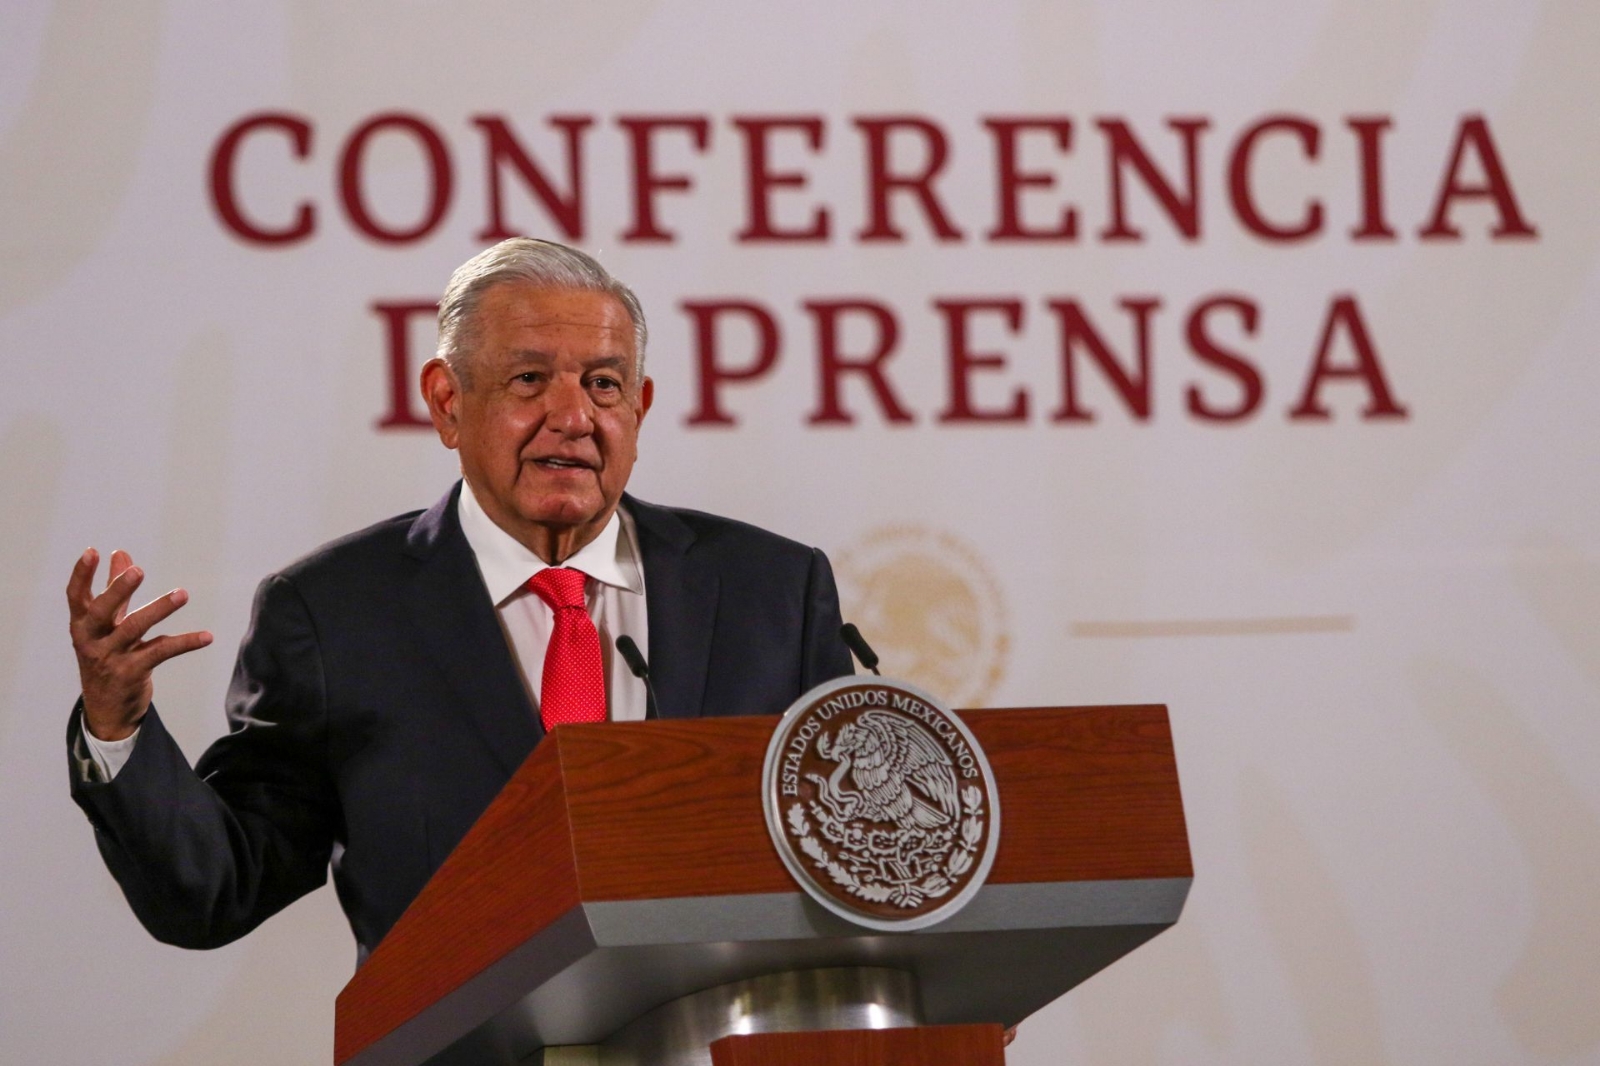 'El planteamiento nuestro es no perseguir a nadie', dice AMLO sobre Peña Nieto